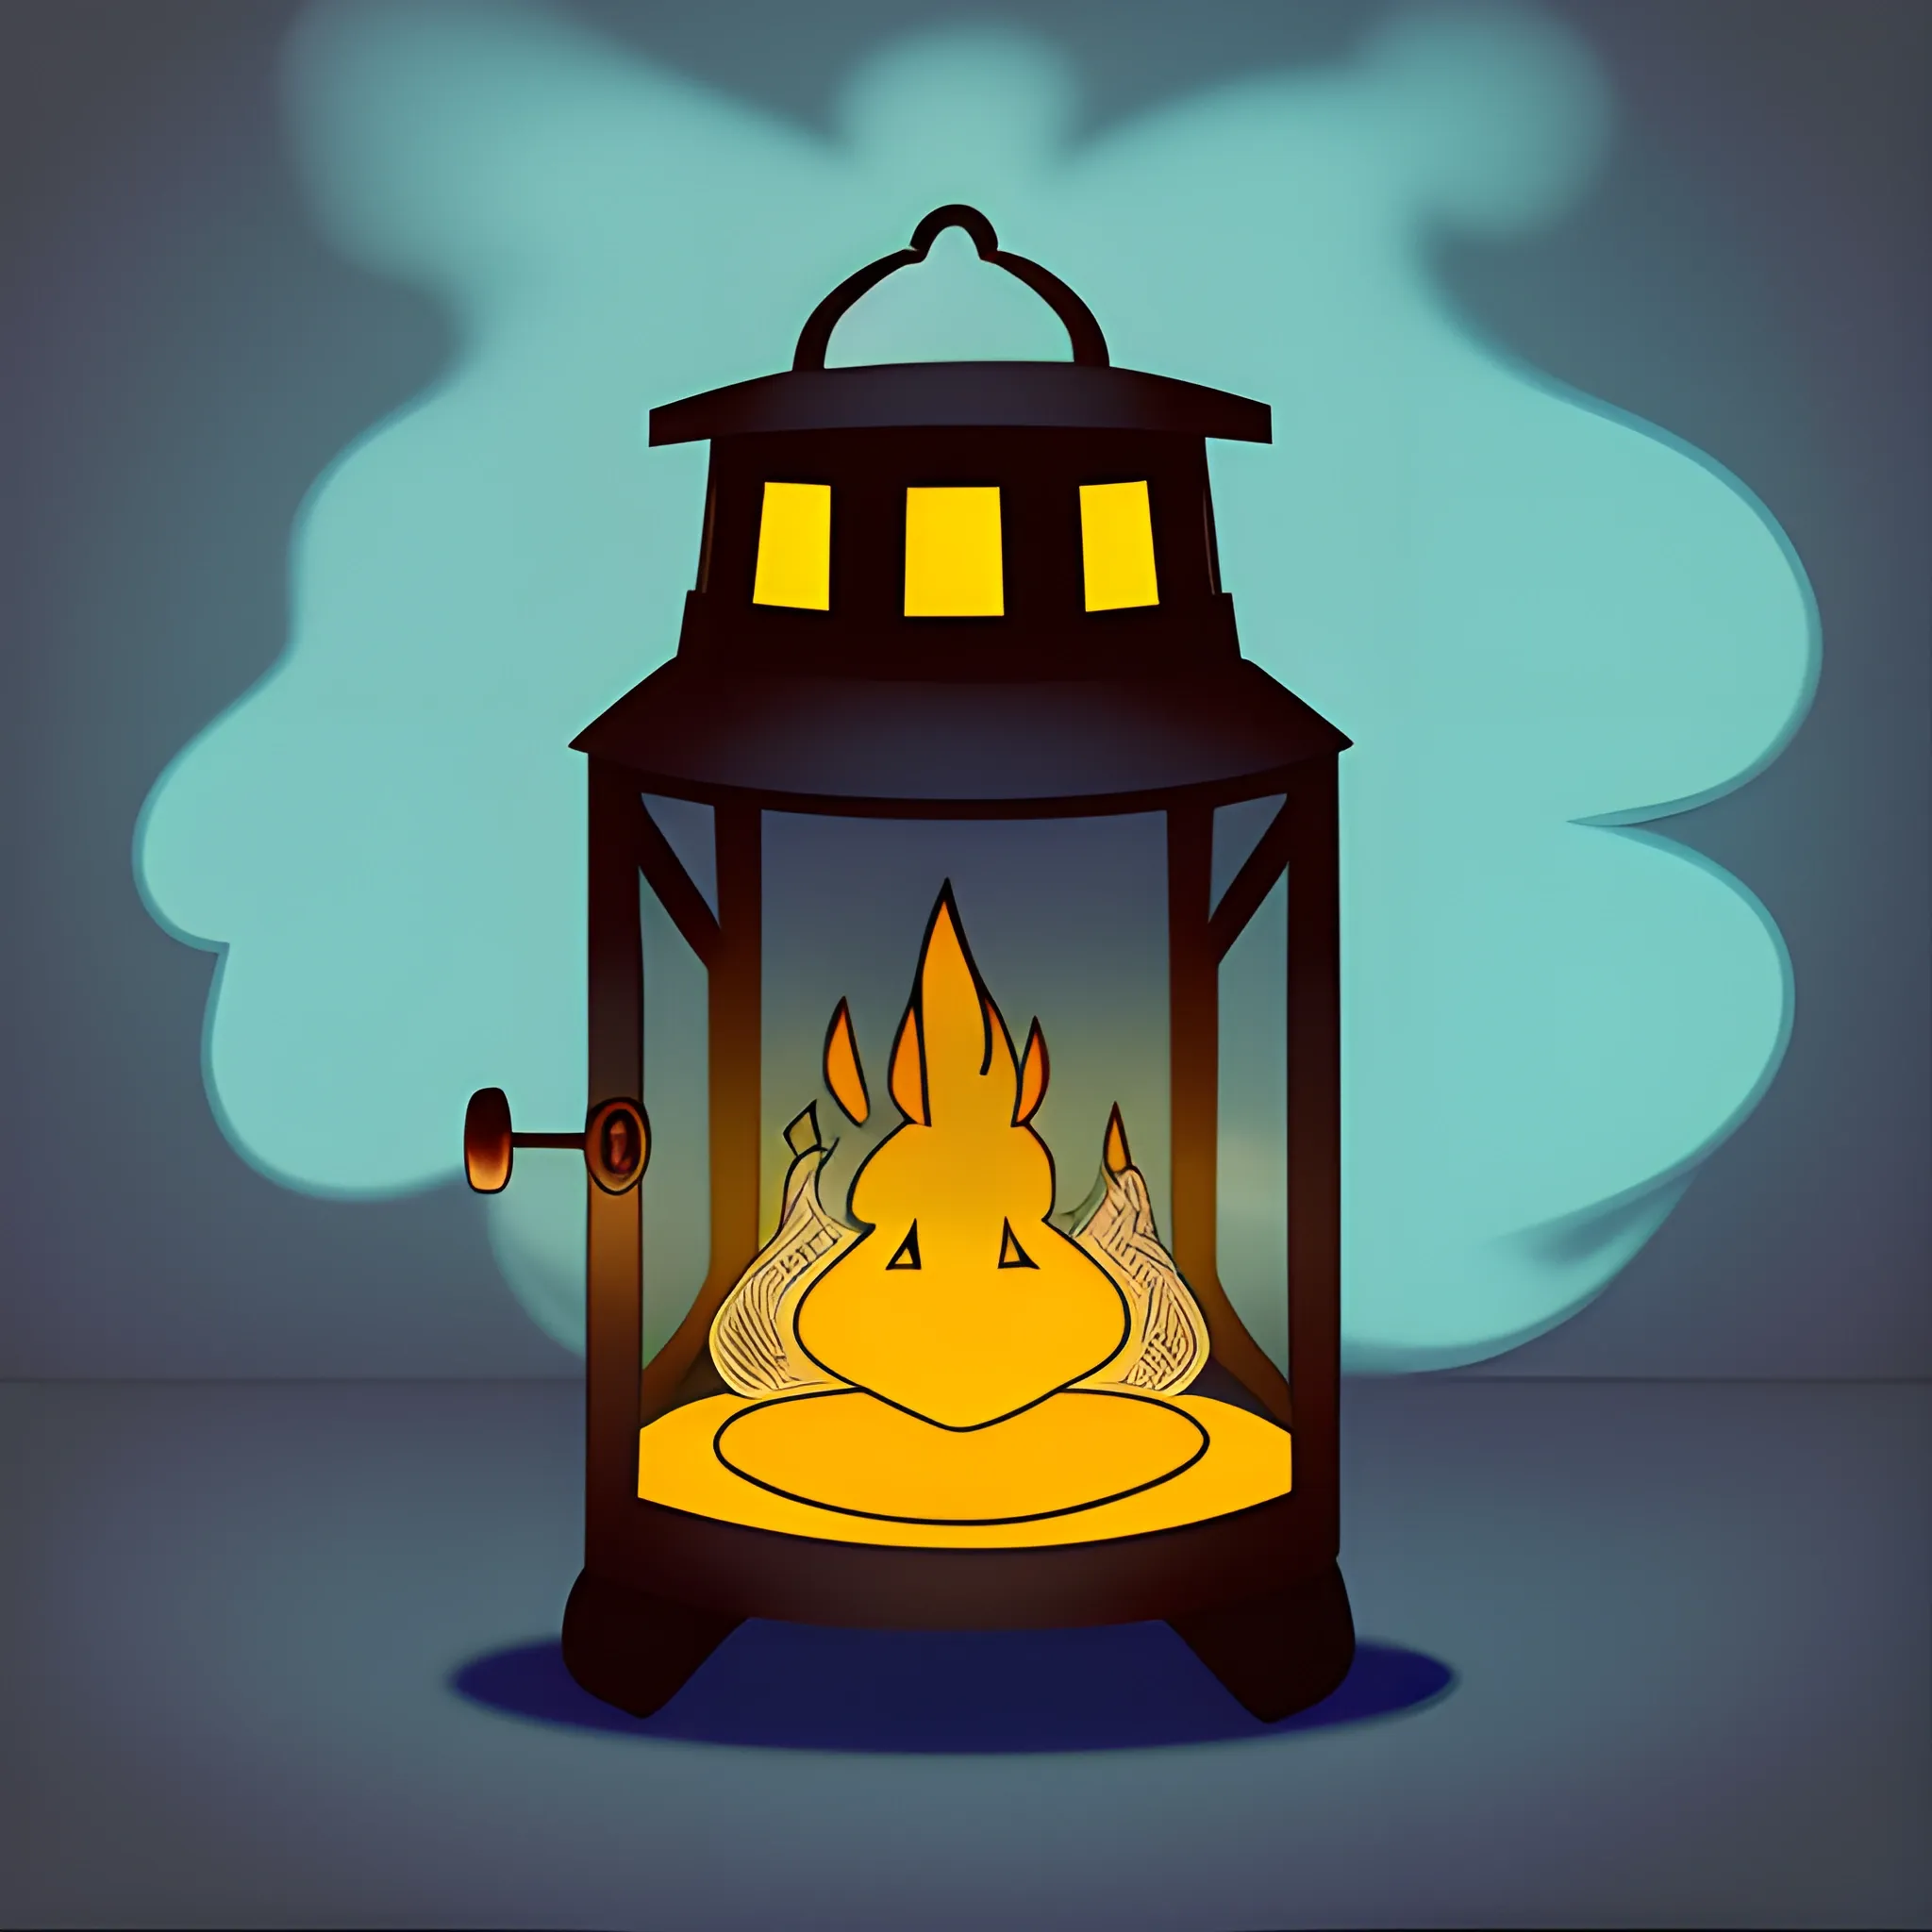 old kerosene lantern on cartoon style with smoke emanating from it in the shape of WWE wrestler Bray Wyatt